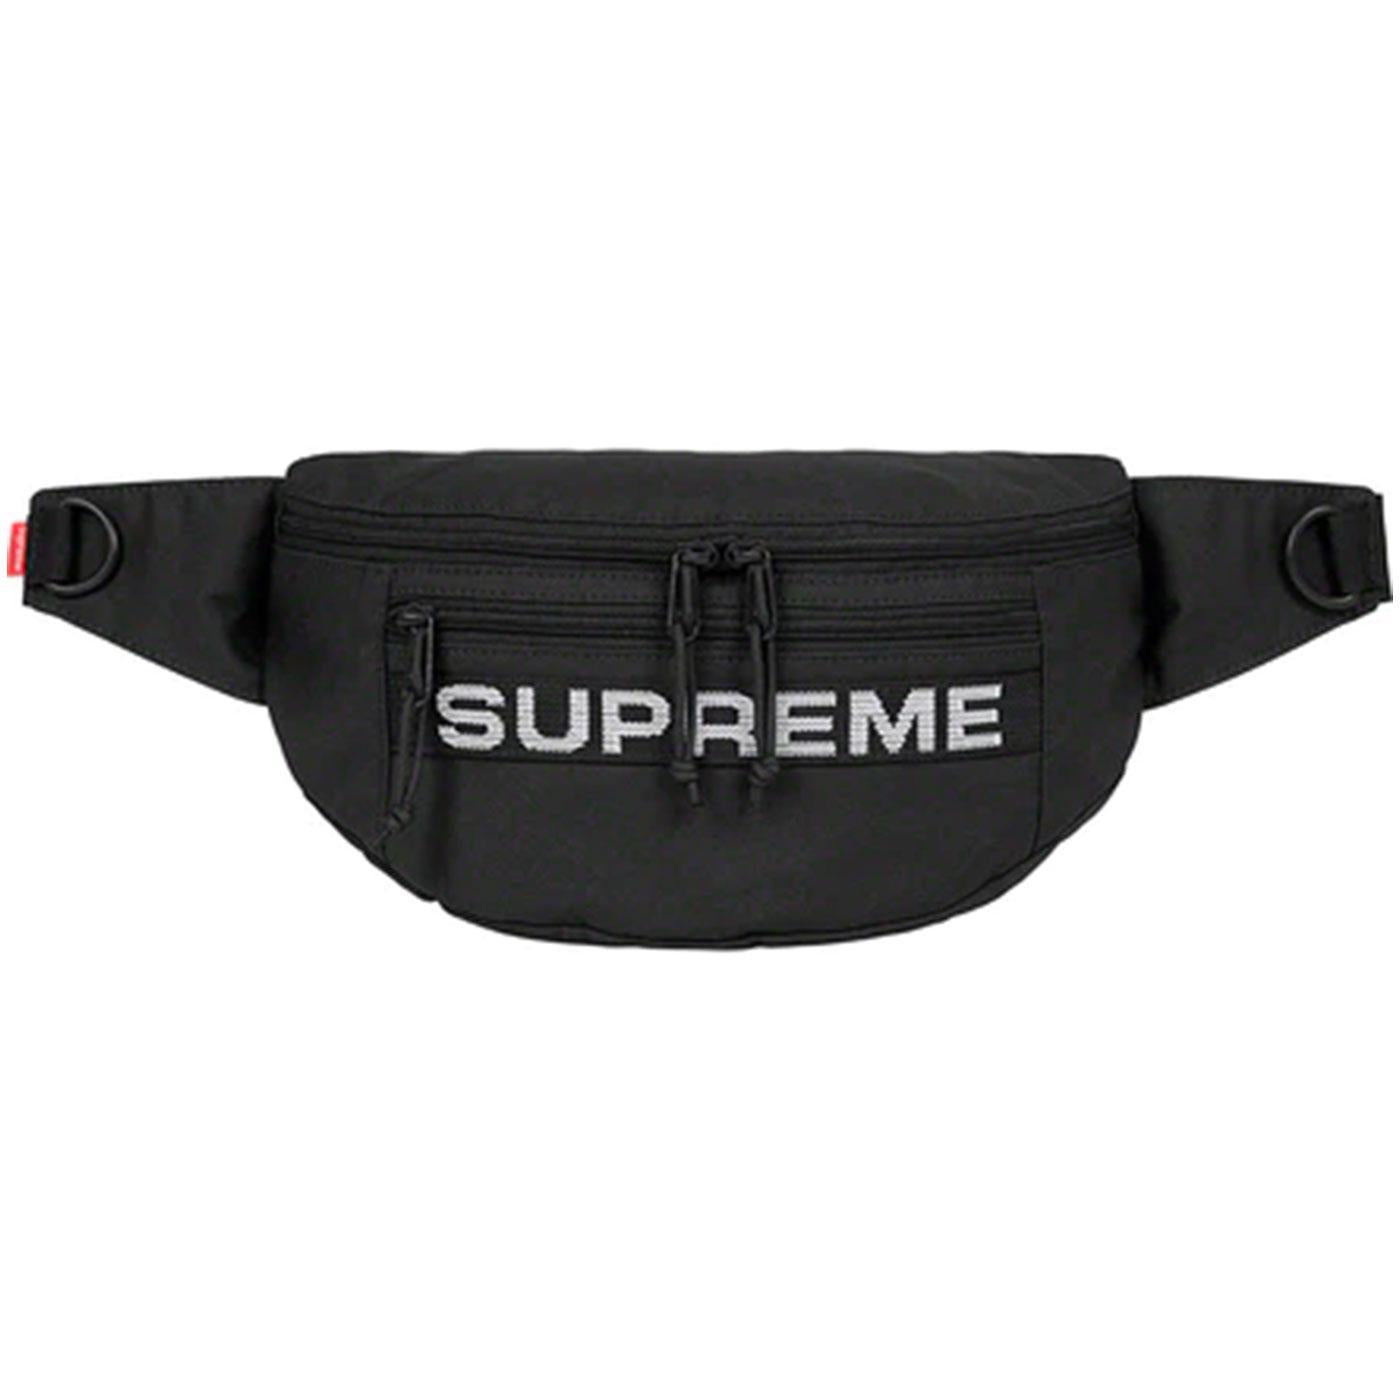 Supreme waist bag(SS19)  Waist bag, Bags, Nike shoulder bag